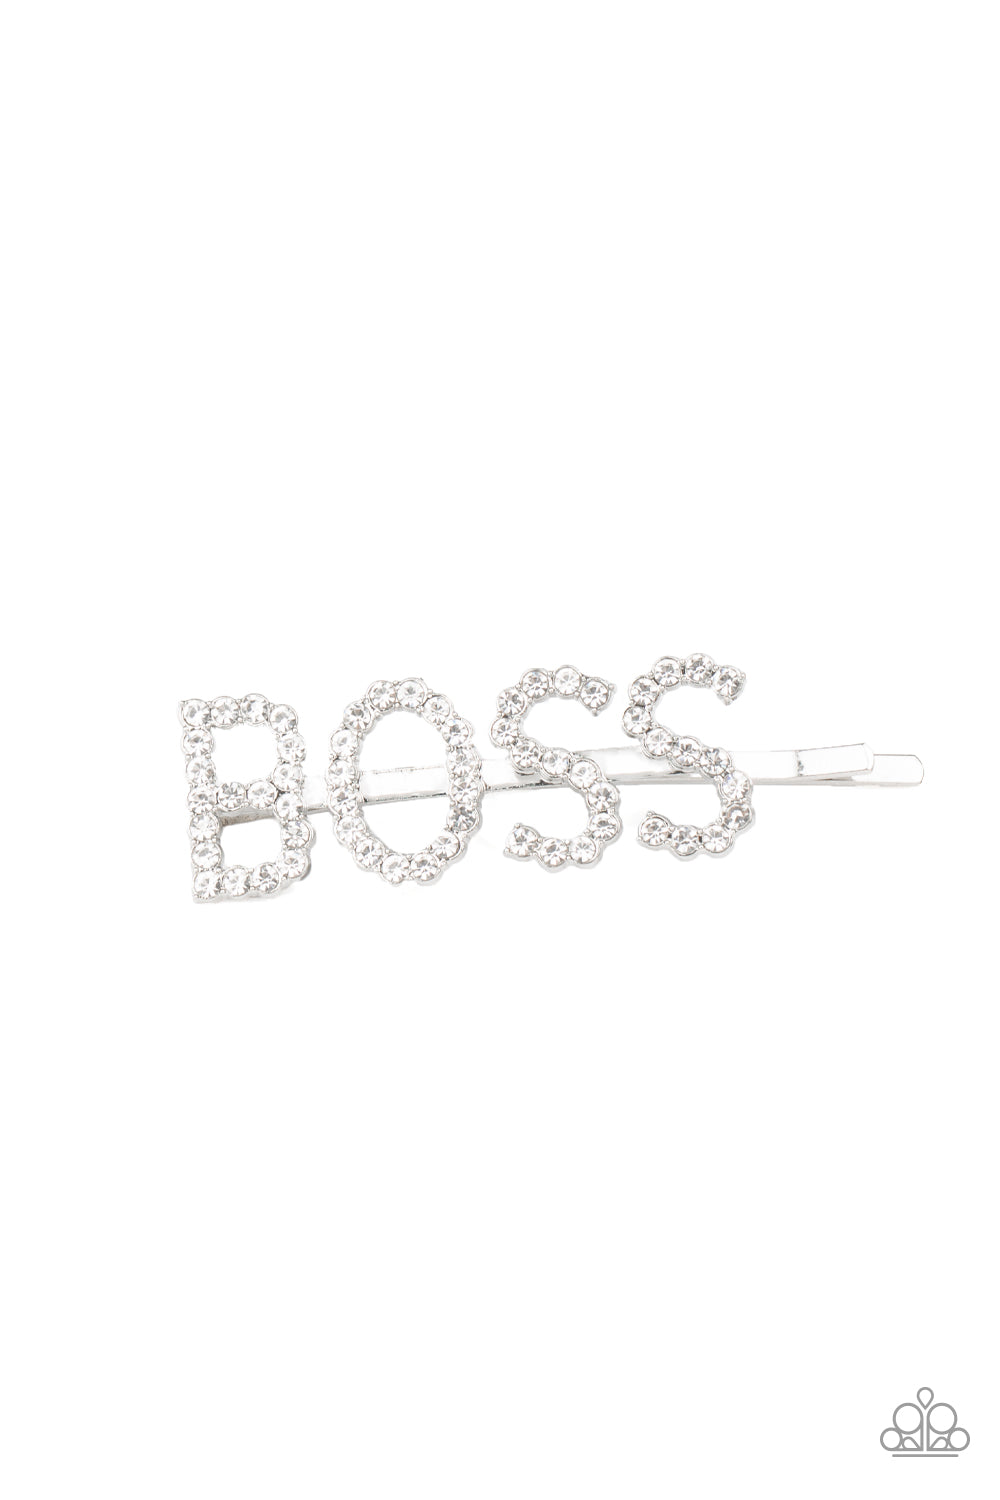 Yas Boss! - White Rhinestone 